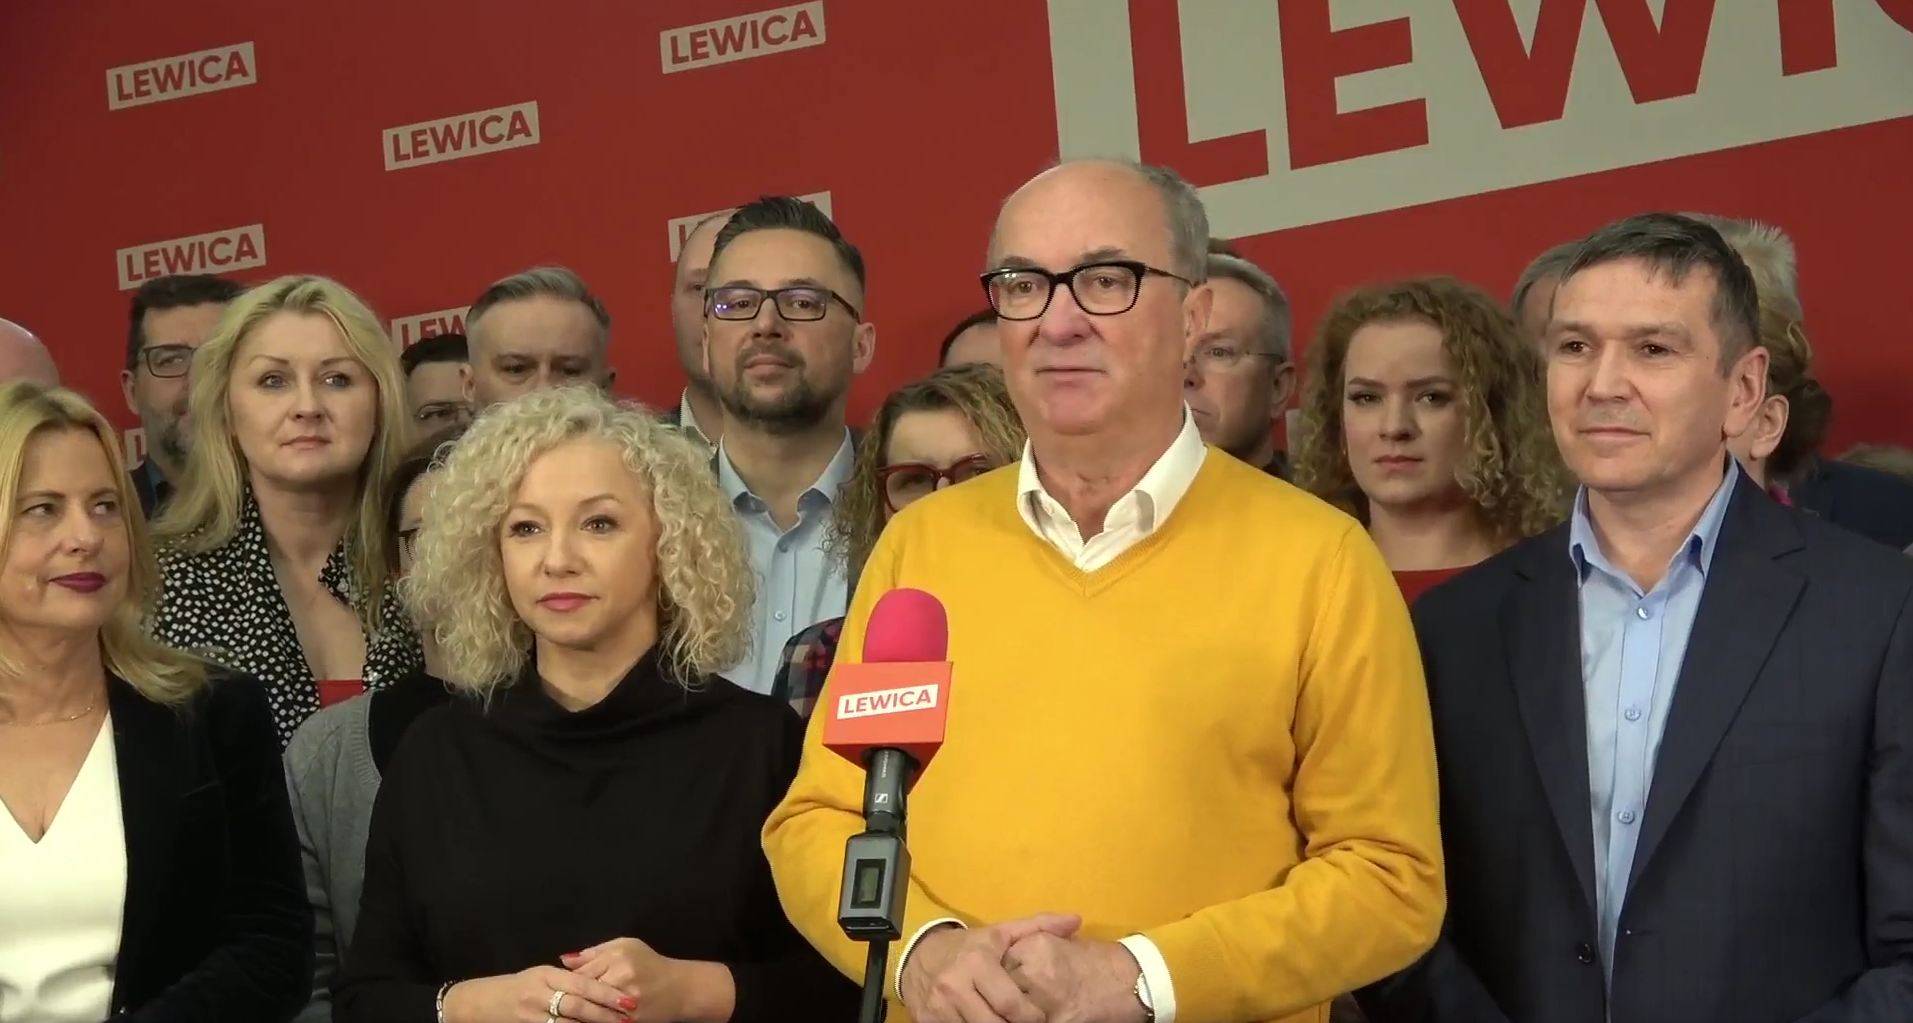 Włodzimierz Czarzasty, współprzewodniczący Lewicy stoi na scenie w gronie innych działaczy partii i przemawia na temat nadchodzących wyborów samorządowych